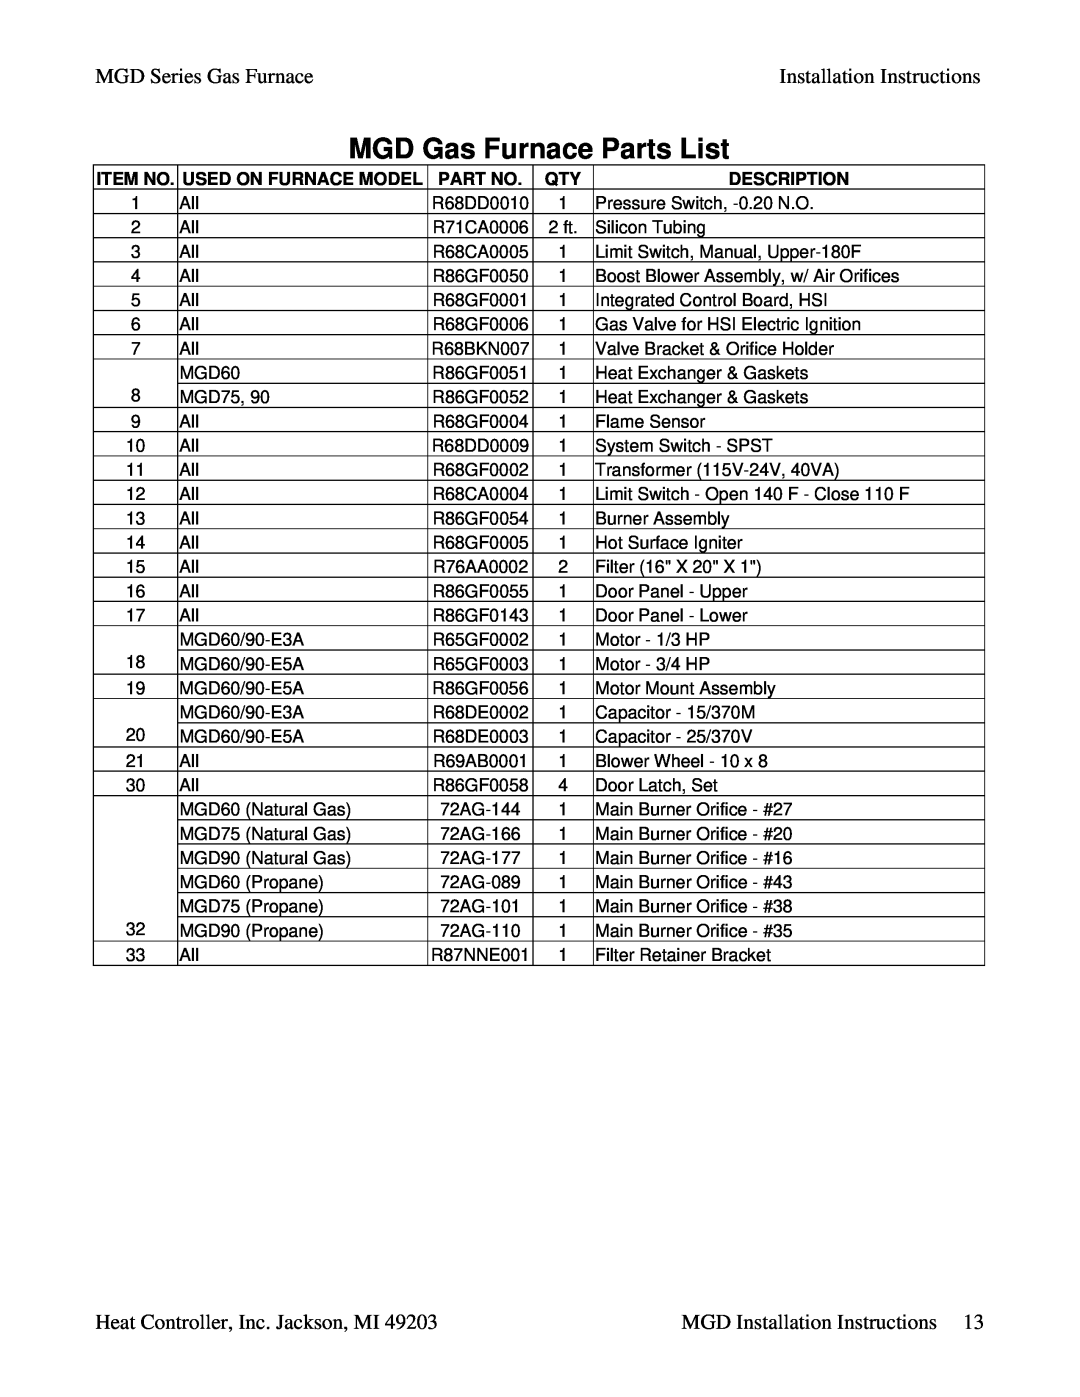 Heat Controller MGD90-E3A, MGD90-E5A MGD Gas Furnace Parts List, MGD Series Gas FurnaceInstallation Instructions, Item No 